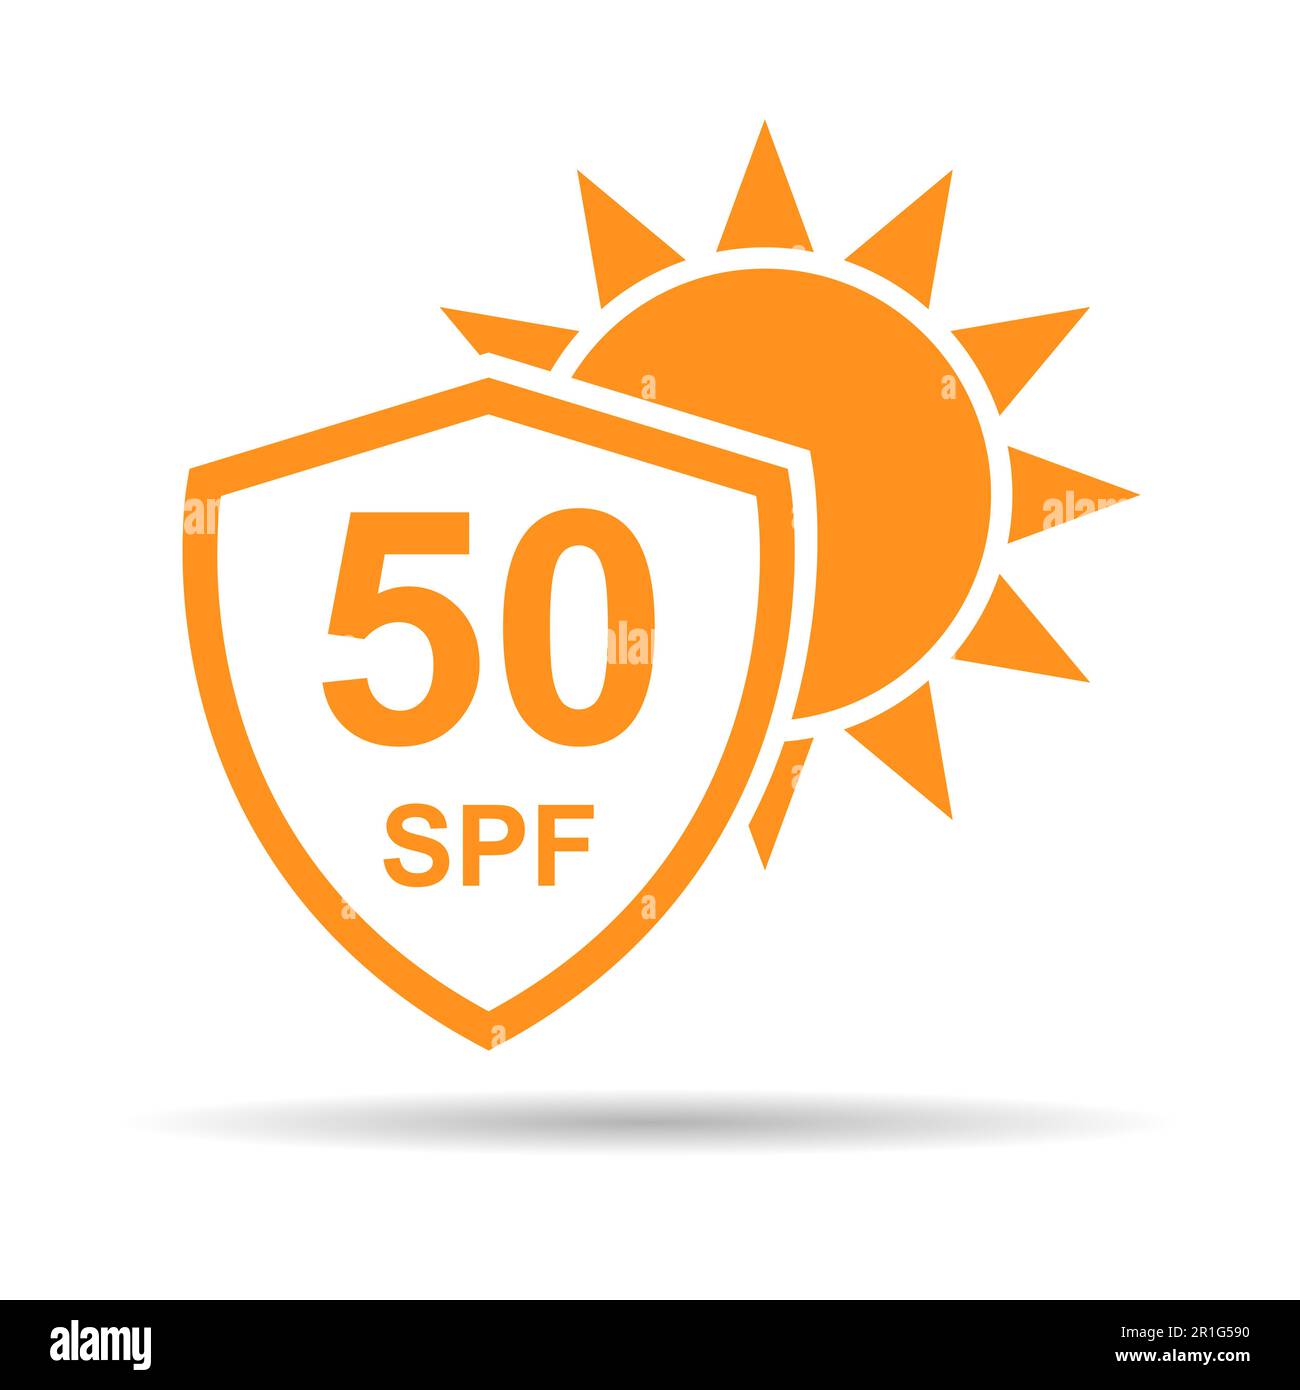 Sonnenschutzfaktor 50 Symbol Schatten, uv-Strahlungsblocksymbol,  Sonnenschutz Hautvektordarstellung Stock-Vektorgrafik - Alamy